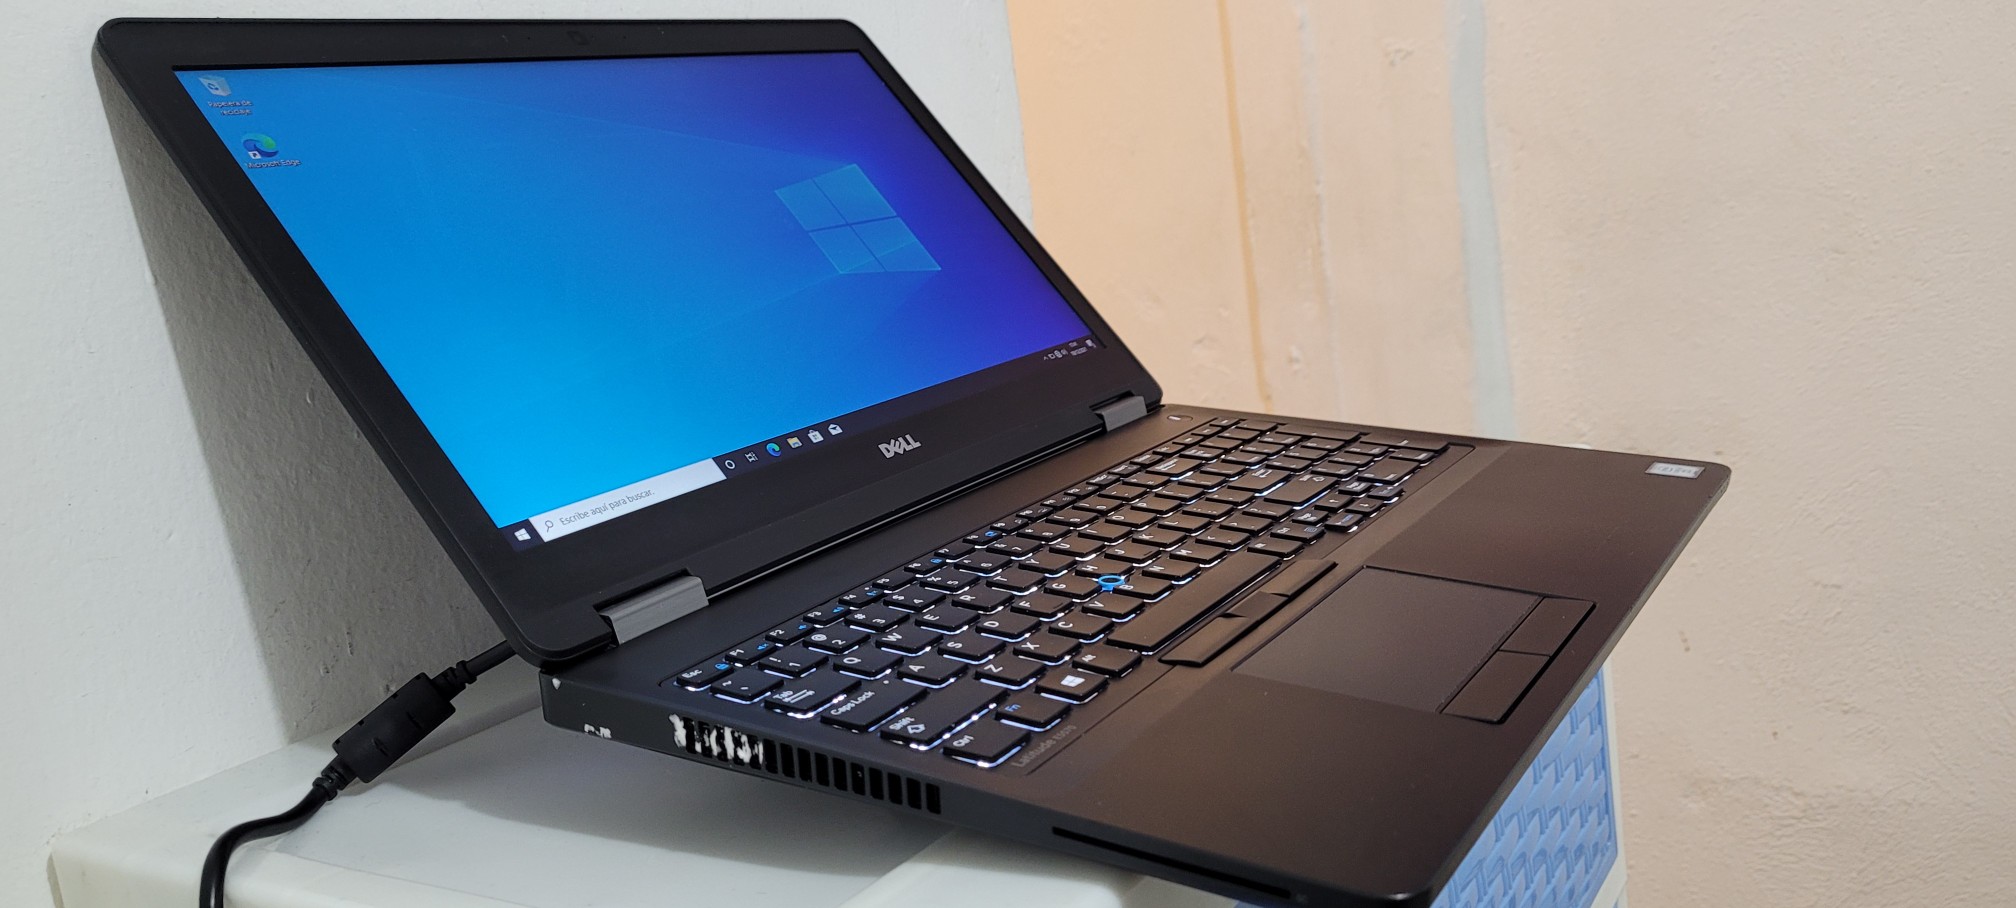 computadoras y laptops - Dell 5570 17 Pulg Core i7 6ta Gen Ram 16gb Disco 256gb Doble Tarjeta de Video 1